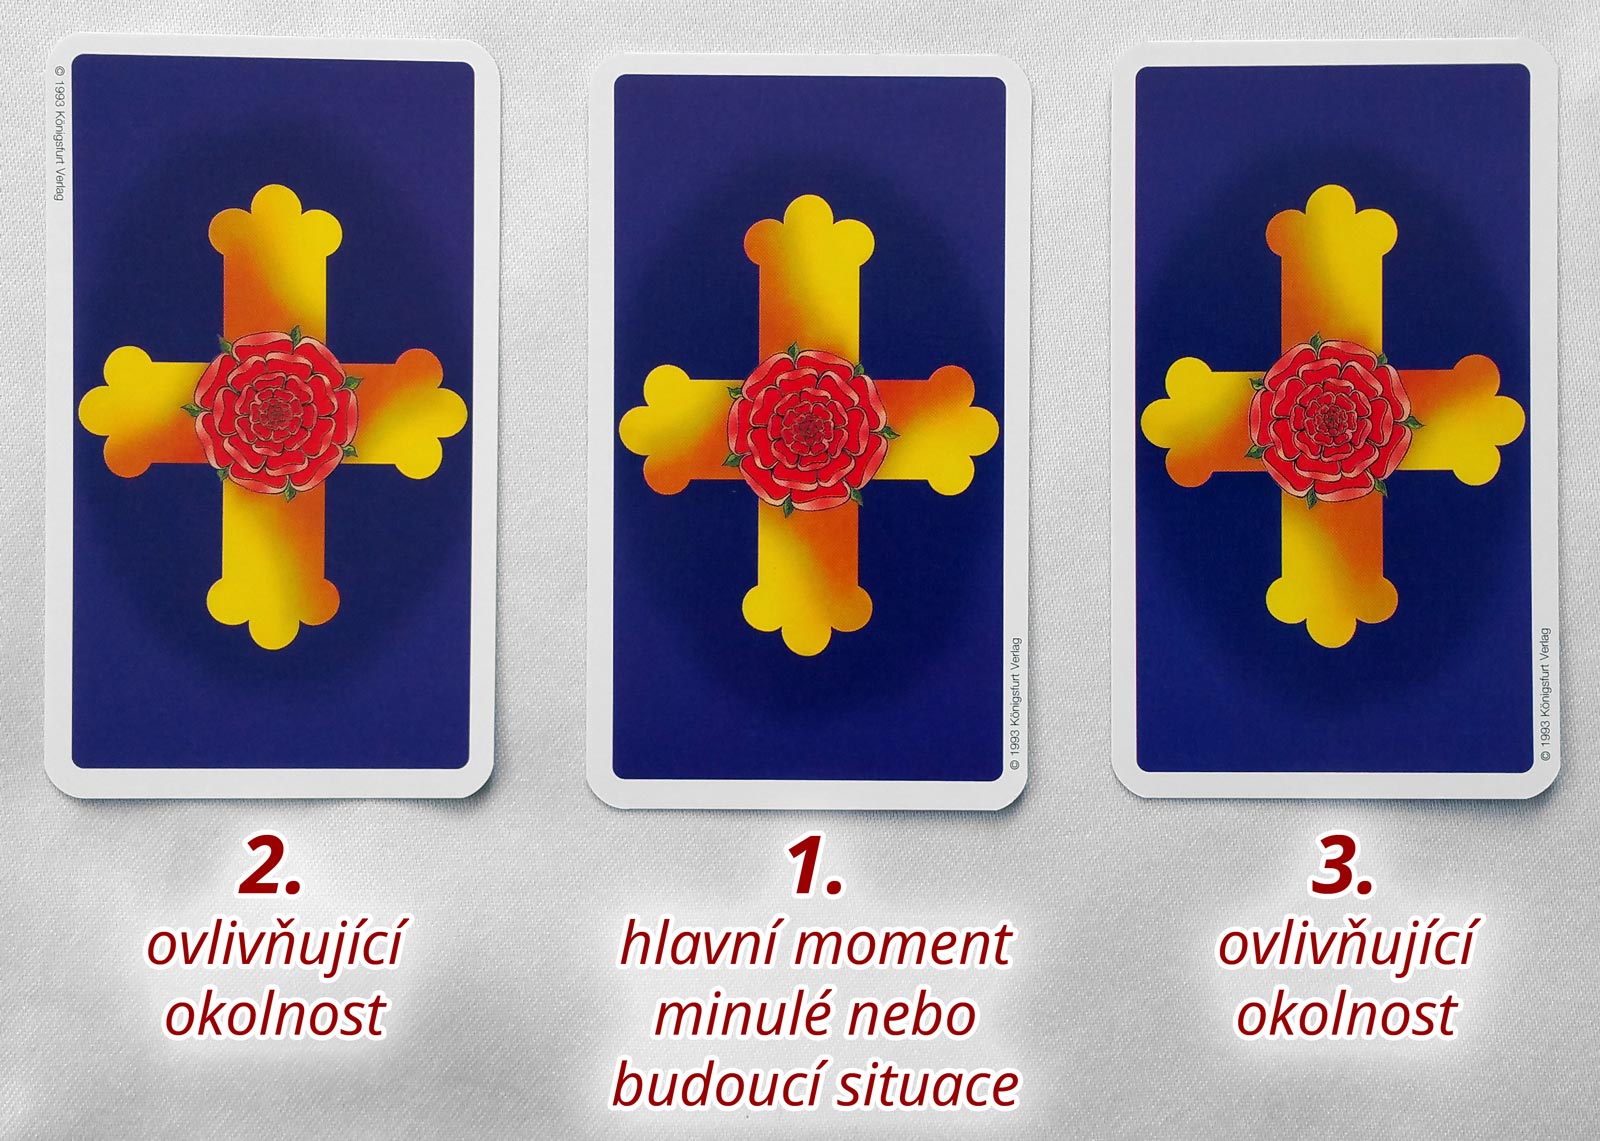 Tři karty: Ovlivňující okolnost; Hlavní moment minulé nebo budoucí situace; Ovlivňující okolnost